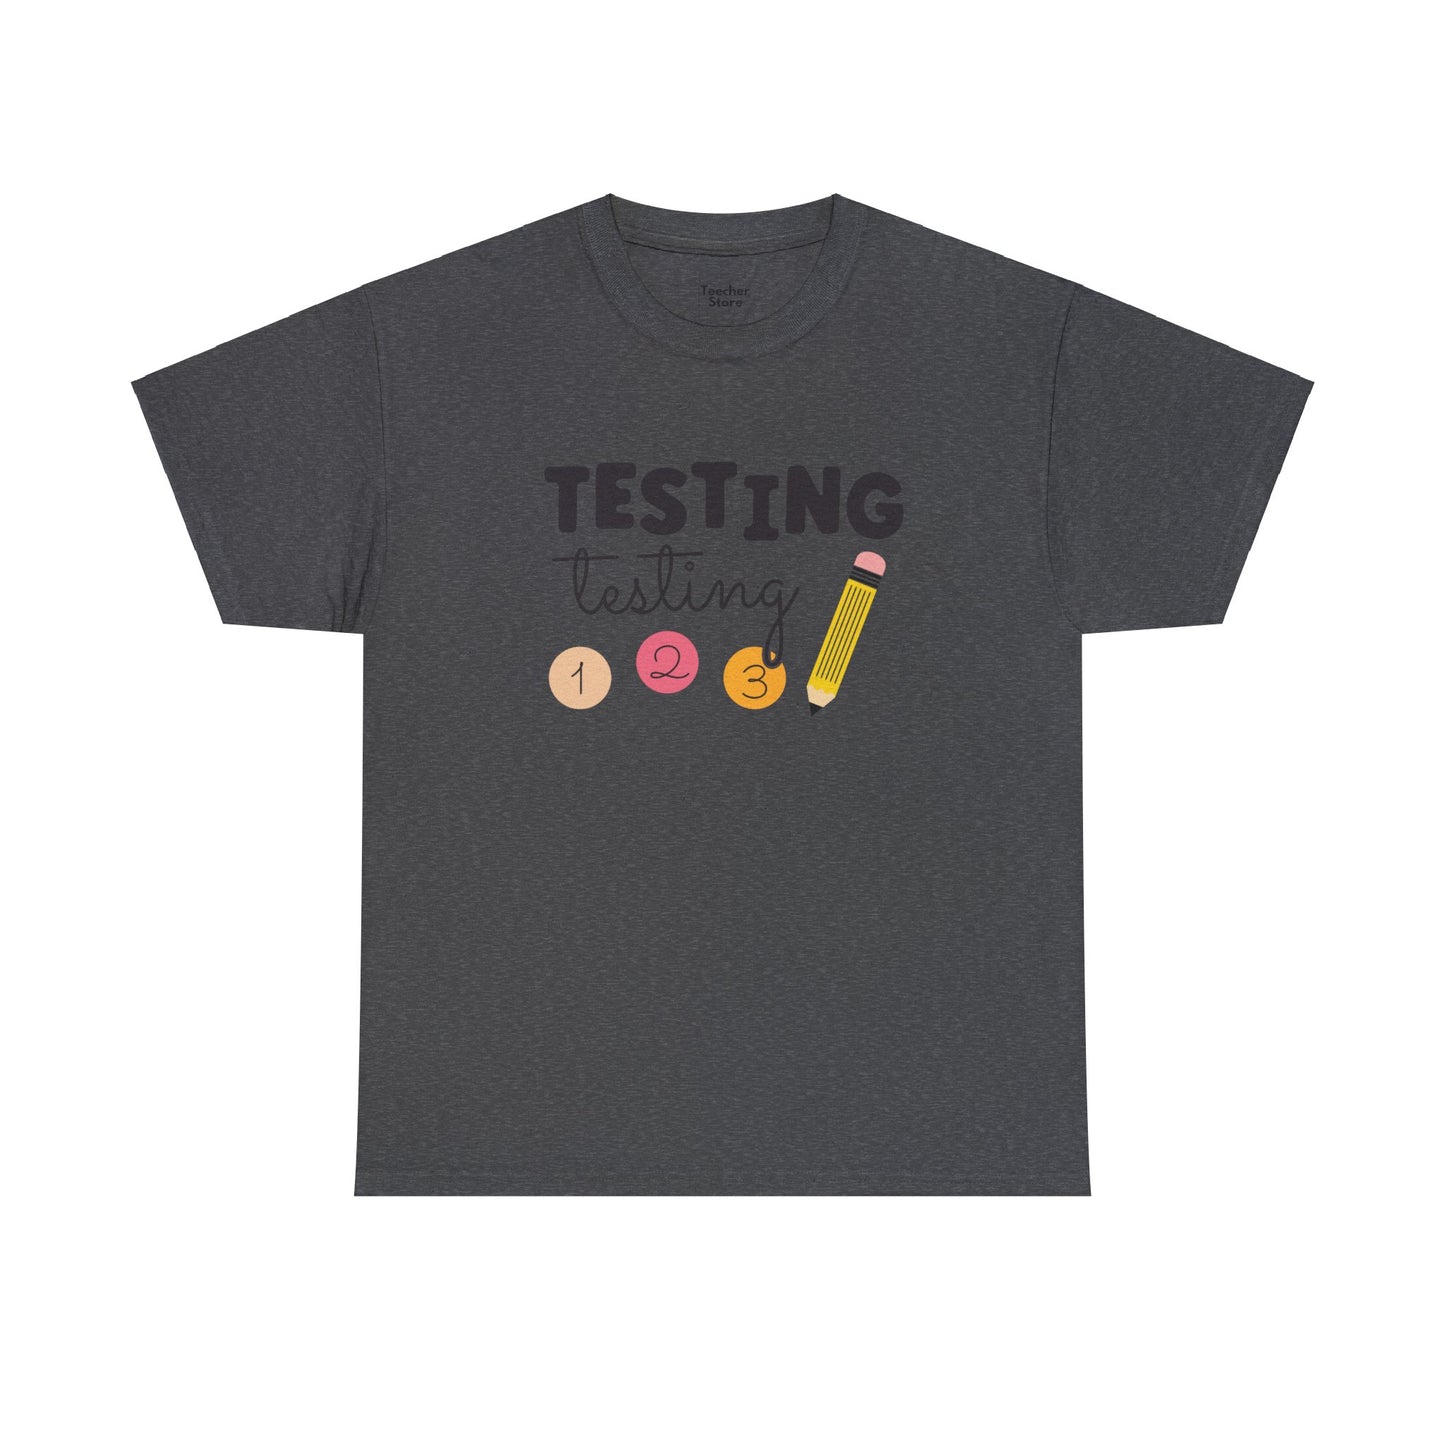 Testing Testing Tee-Shirt